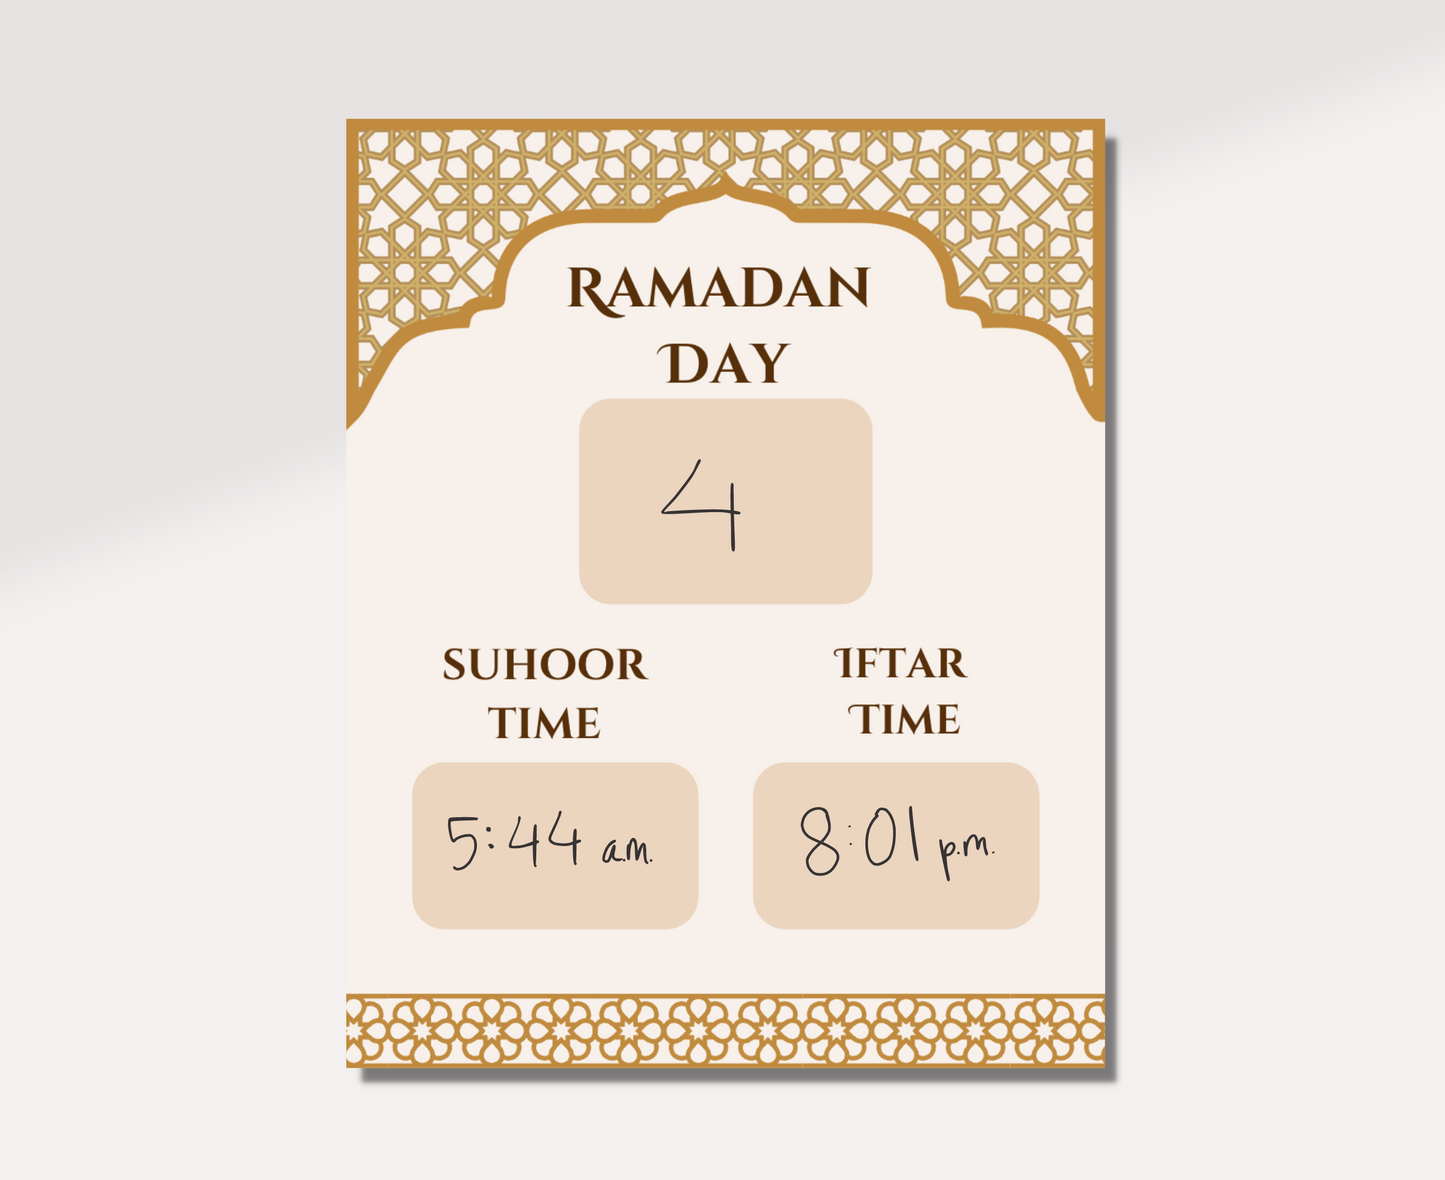  Ramadan Calendar Tracker with "4" written under Ramadan Day and "5:44 a.m." written under Suhoor Time and "8:01 p.m." written under Iftar Time. 